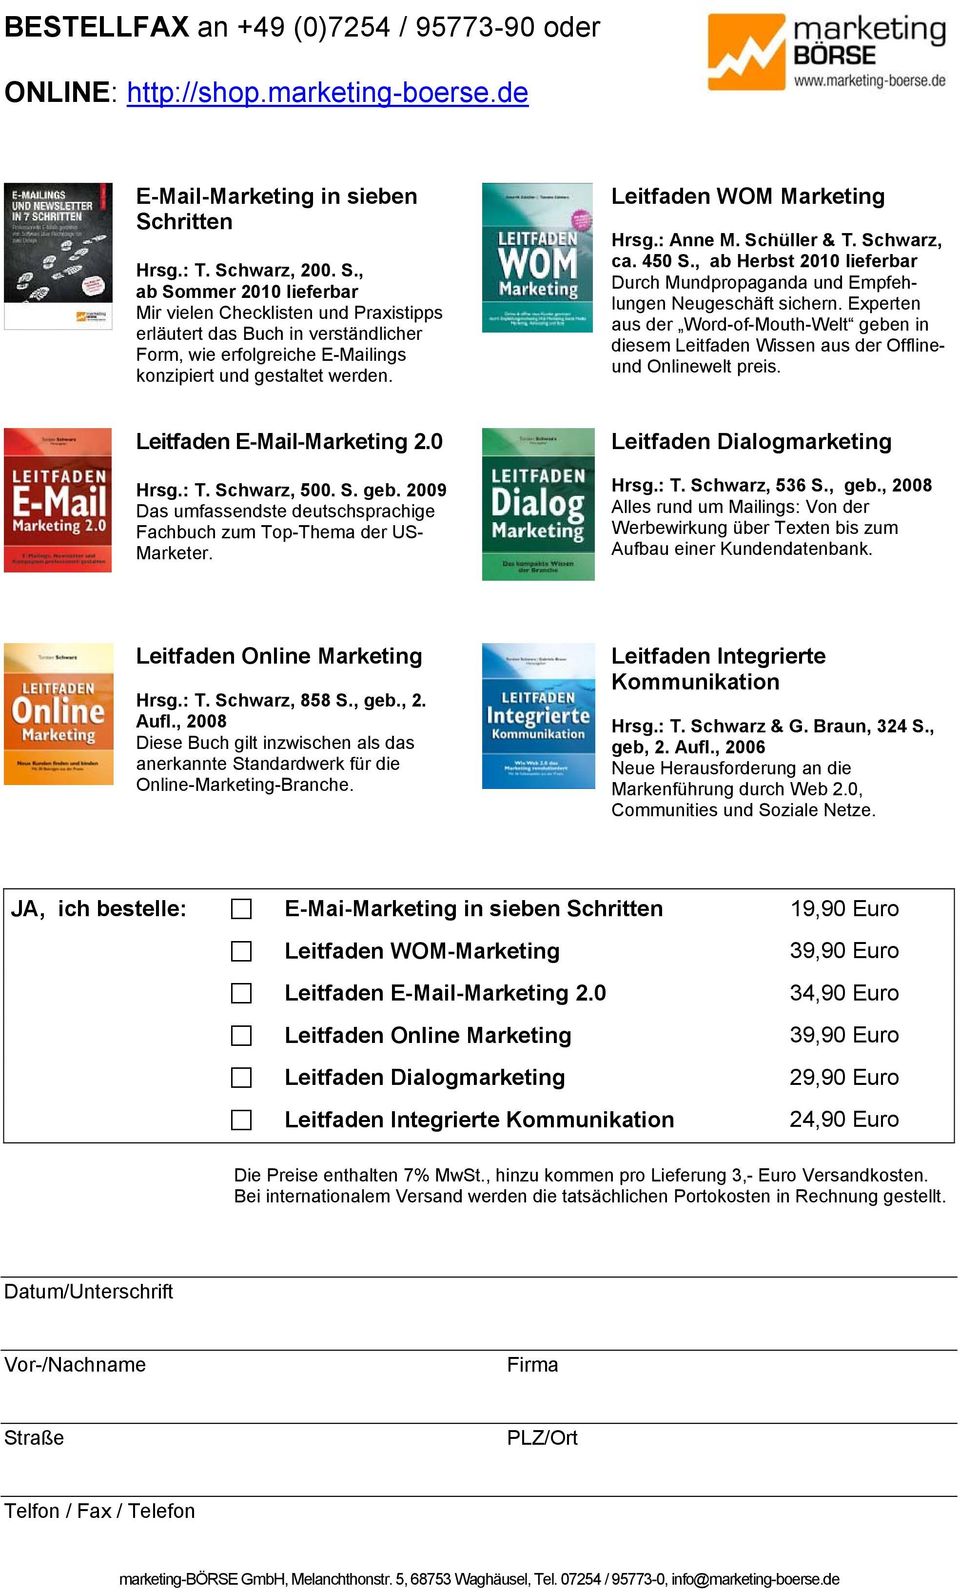 Leitfaden WOM Marketing Hrsg.: Anne M. Schüller & T. Schwarz, ca. 450 S., ab Herbst 2010 lieferbar Durch Mundpropaganda und Empfehlungen Neugeschäft sichern.